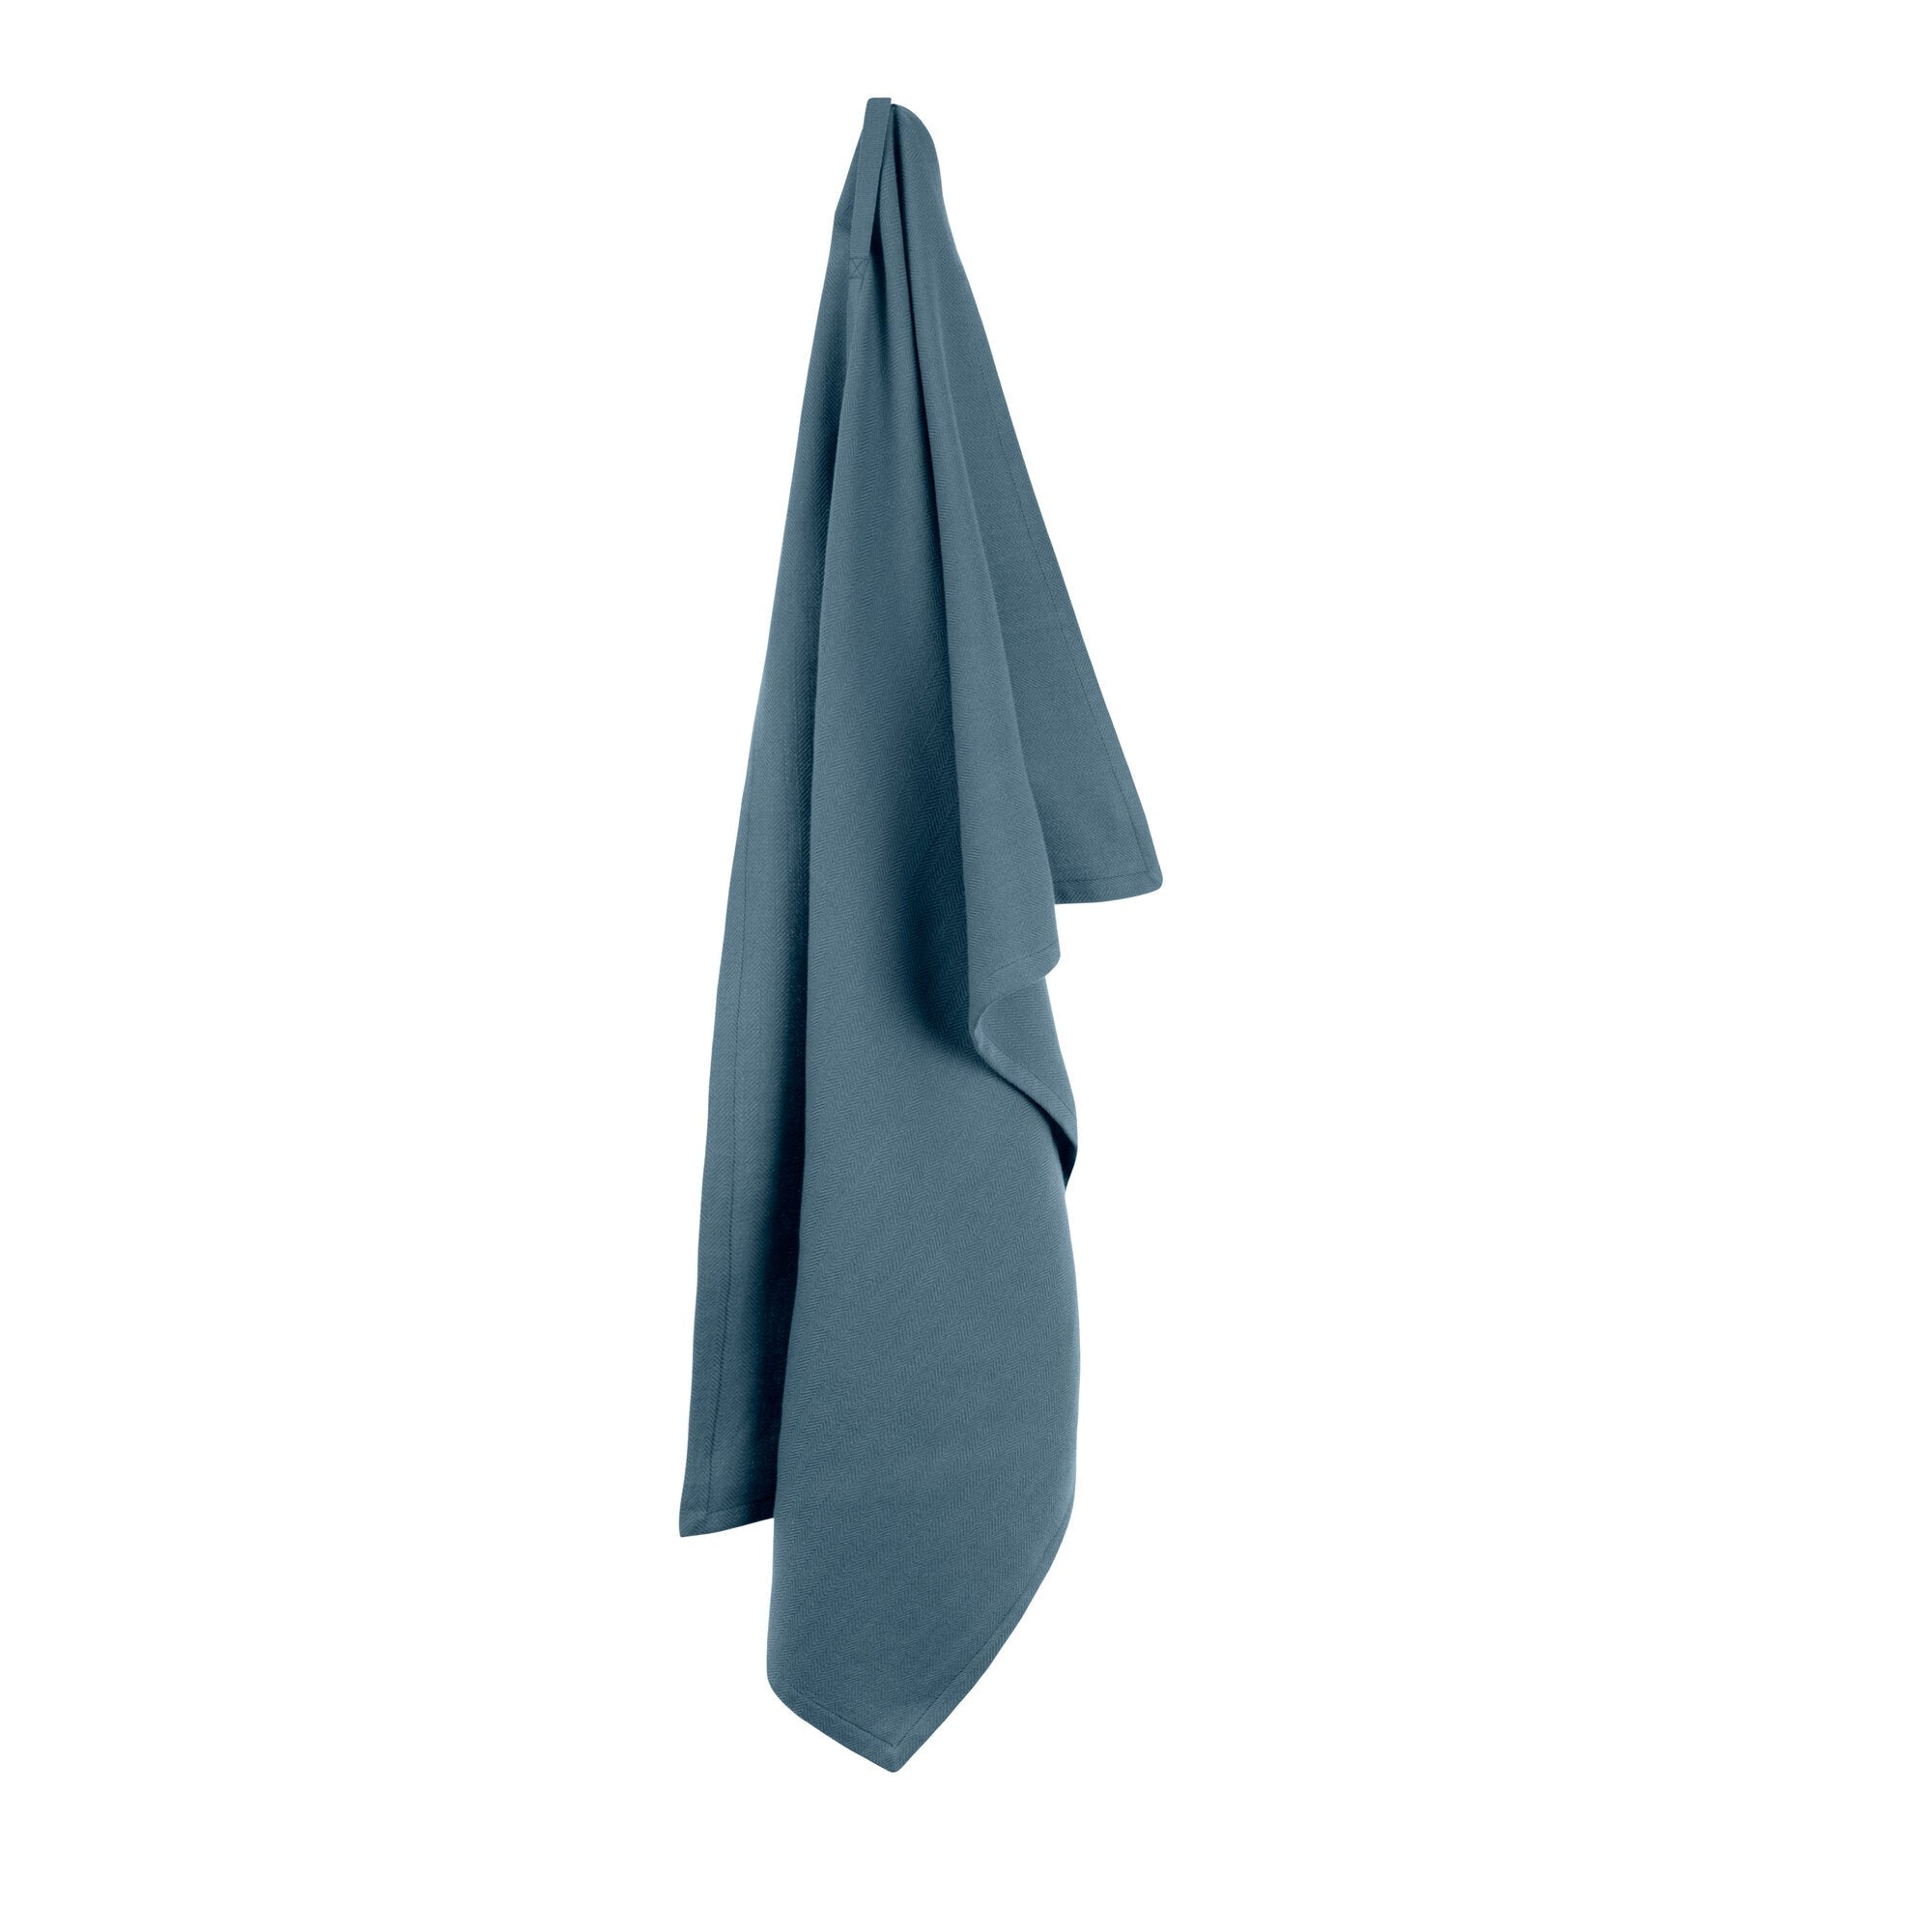 Det organiske firma køkkenhåndklæde, grå blå